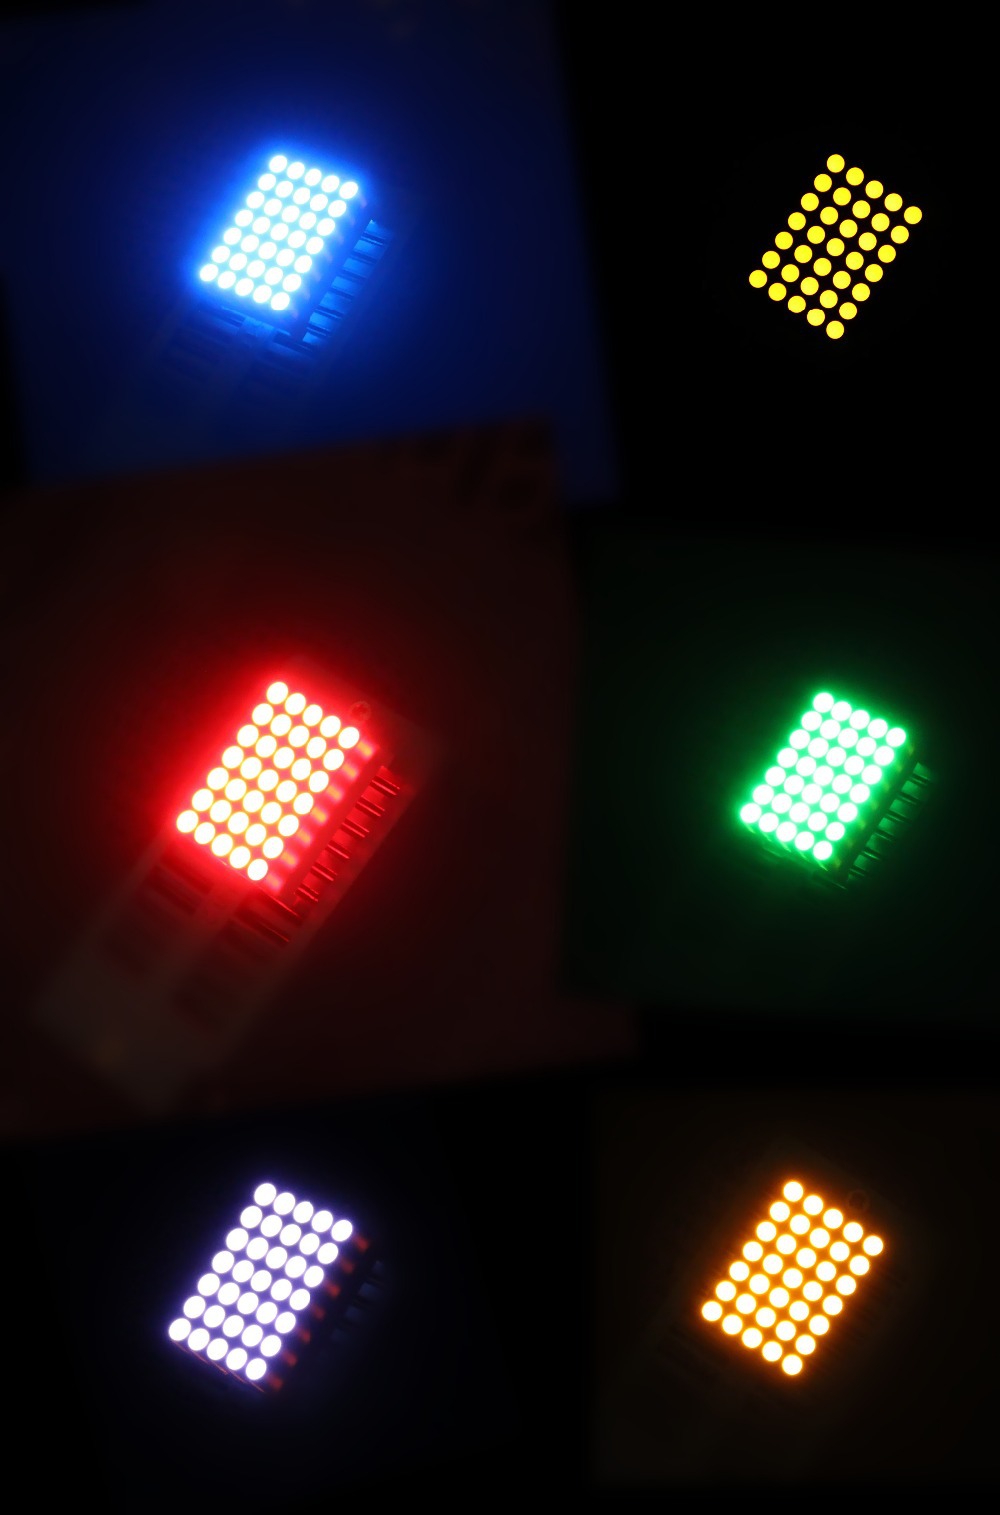 led dot matrix